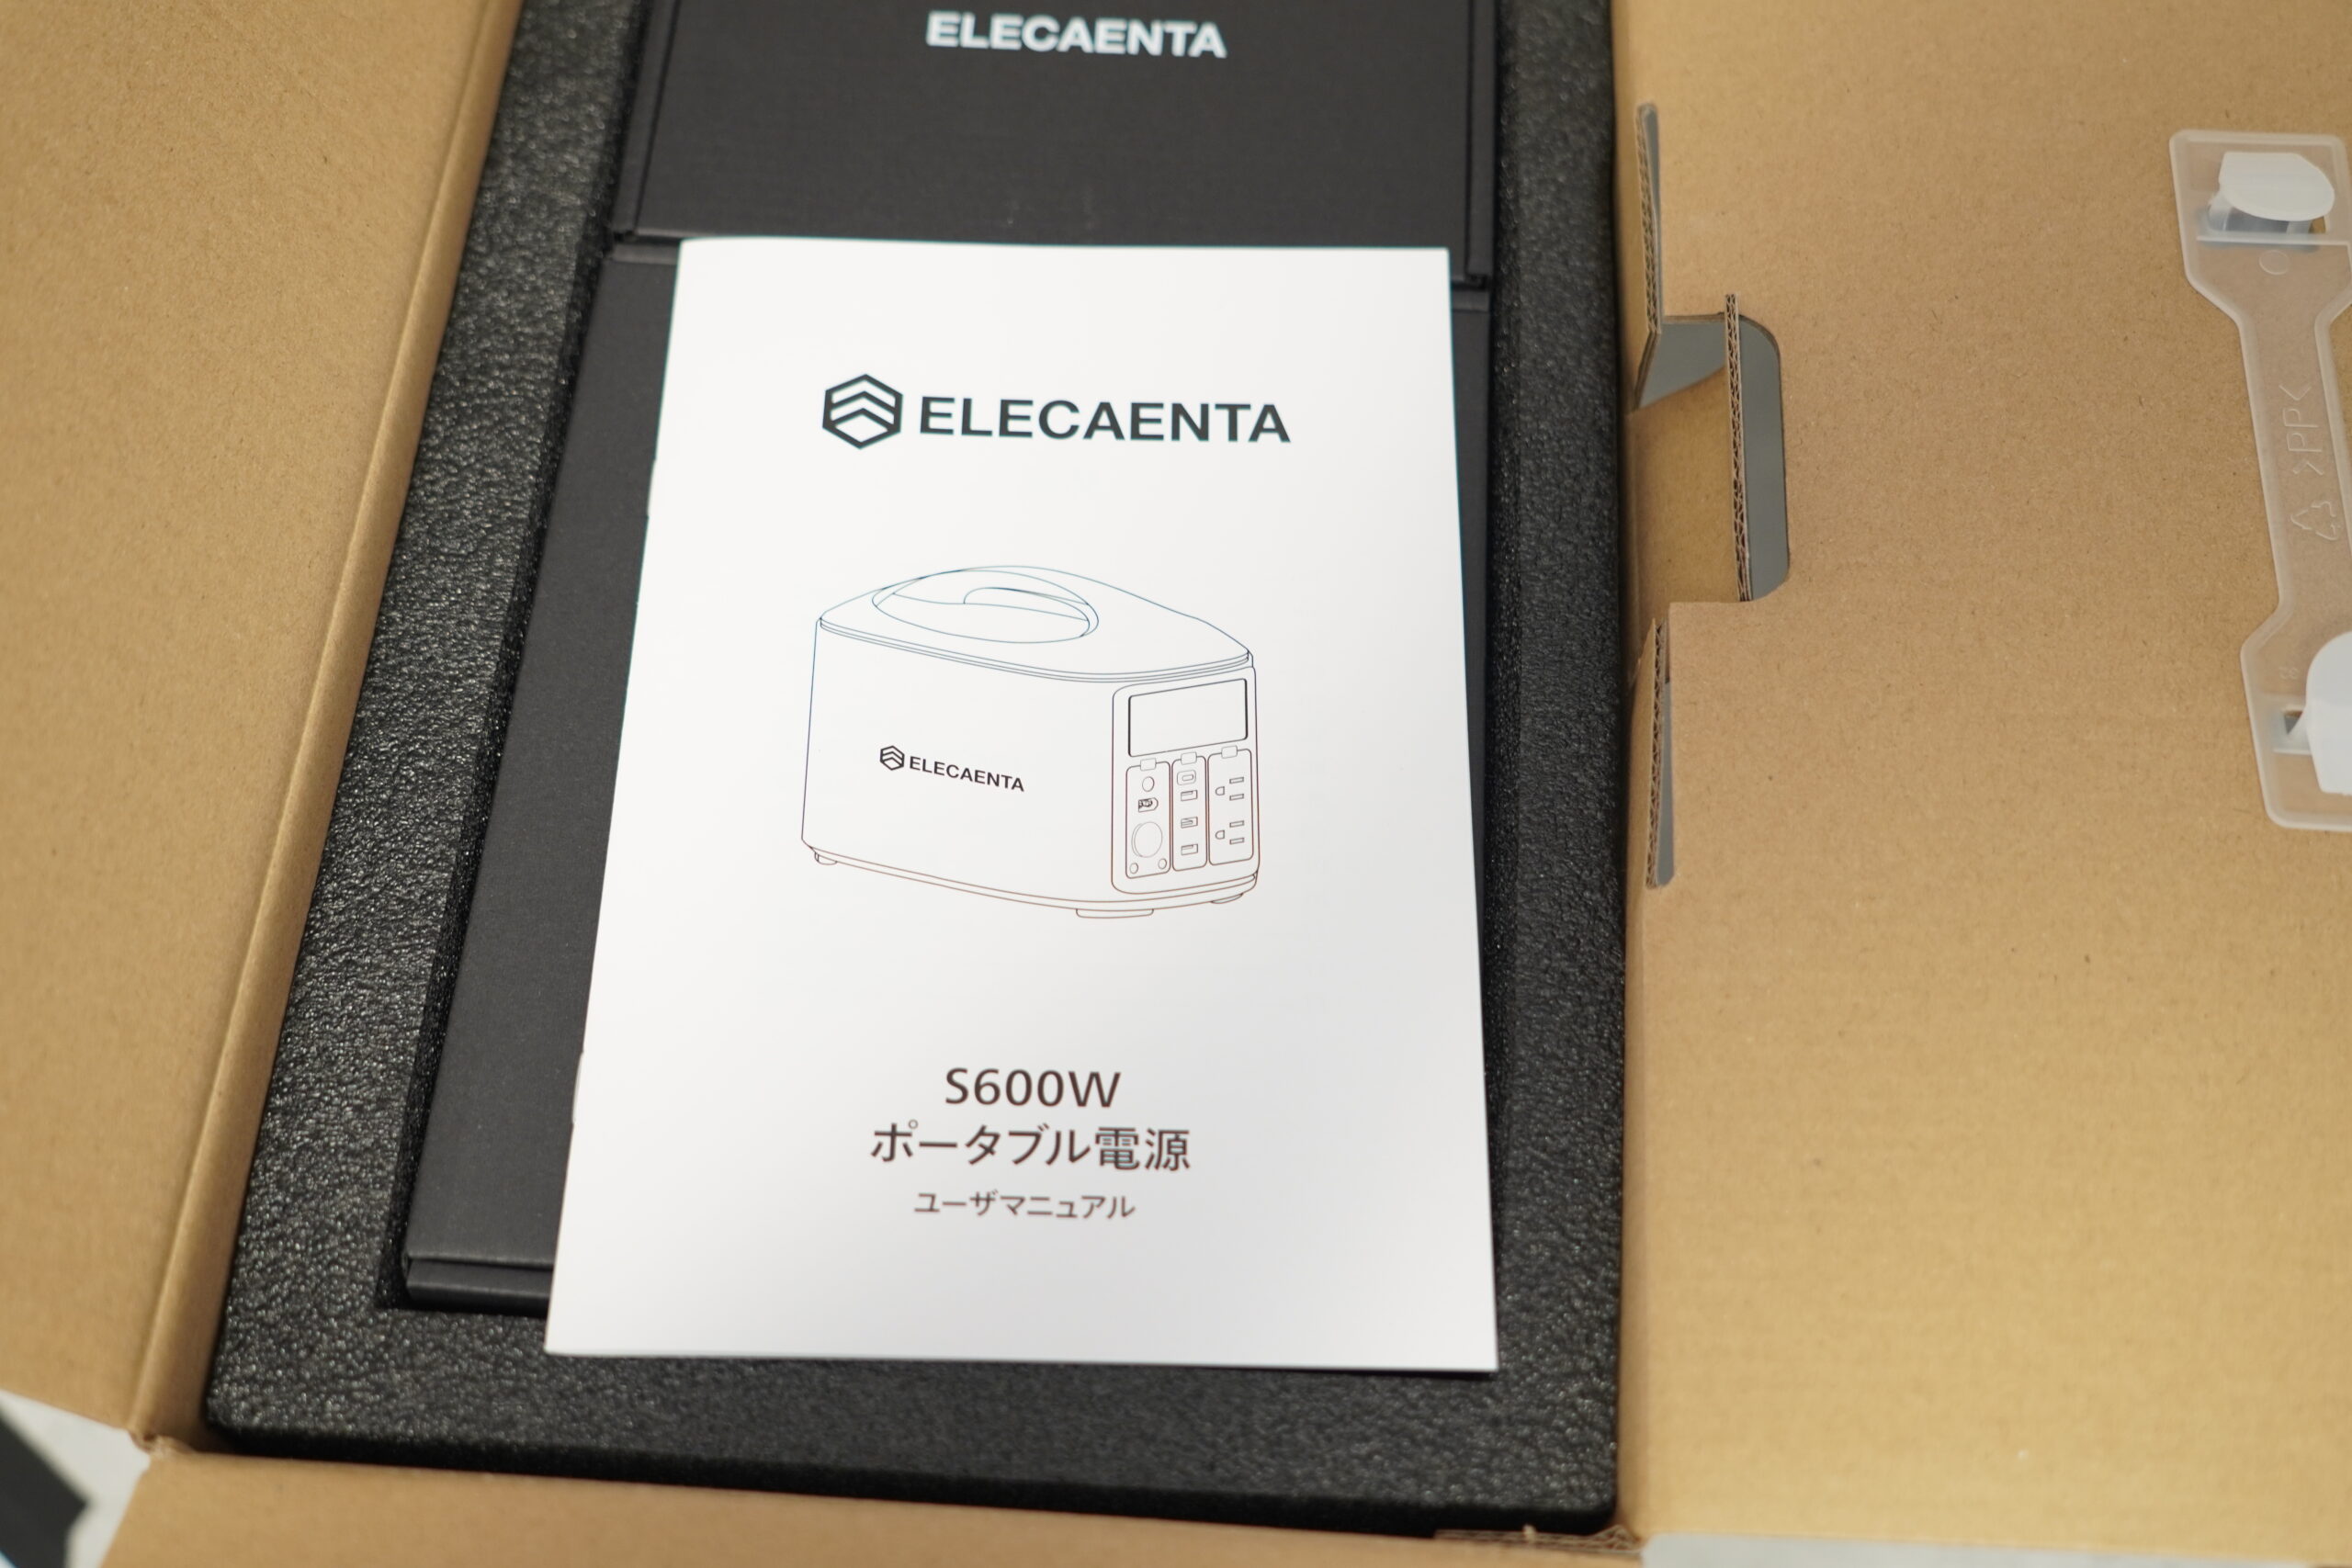 ELECAENTA S600W ポータブル電源 レビュー